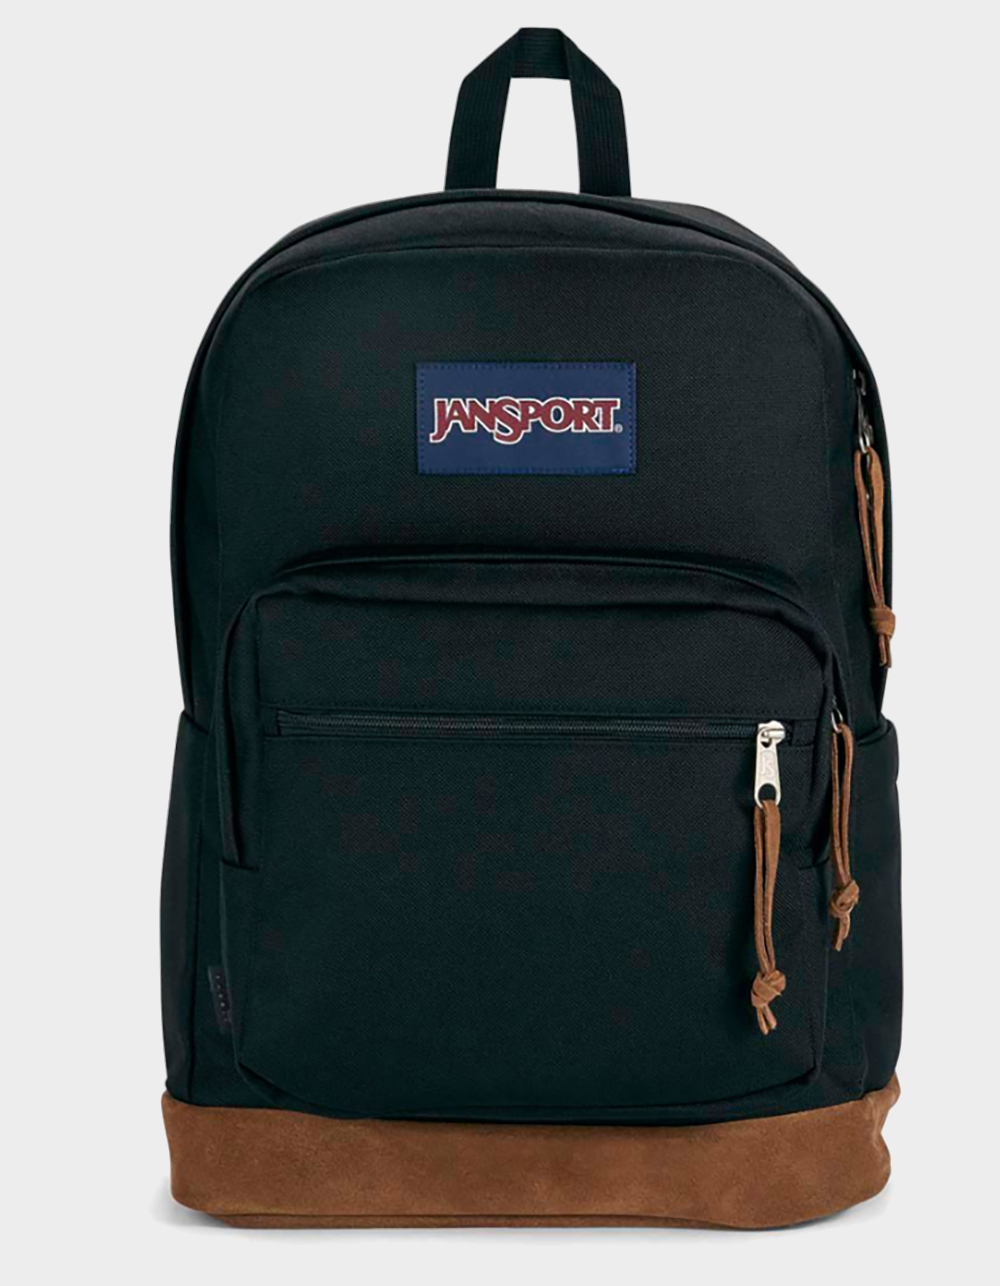 backpacks for school